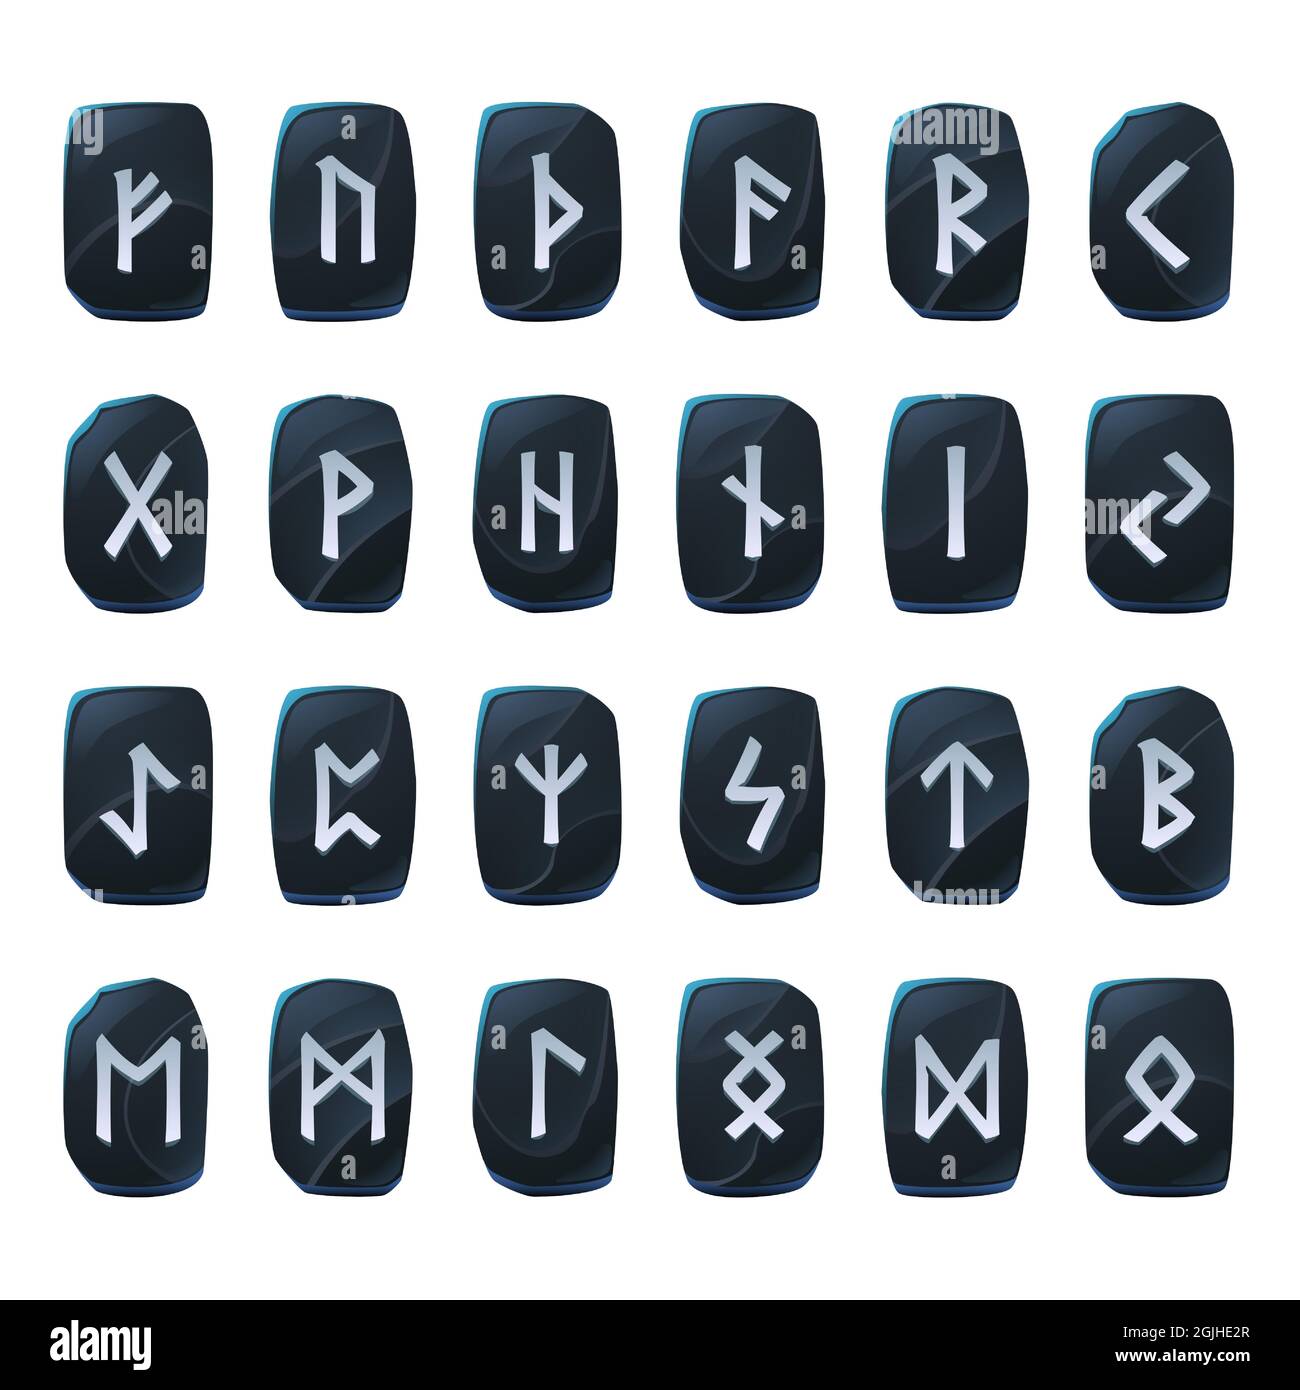 Ensemble de runes de jeu d'onyx, alphabet antique nordique, symboles du futuriste celtique viking gravés sur des pièces en pierre noire. Signes occultes ésotériques, éléments mystiques de l'interface utilisateur ou de l'interface graphique, illustration vectorielle isolée Illustration de Vecteur